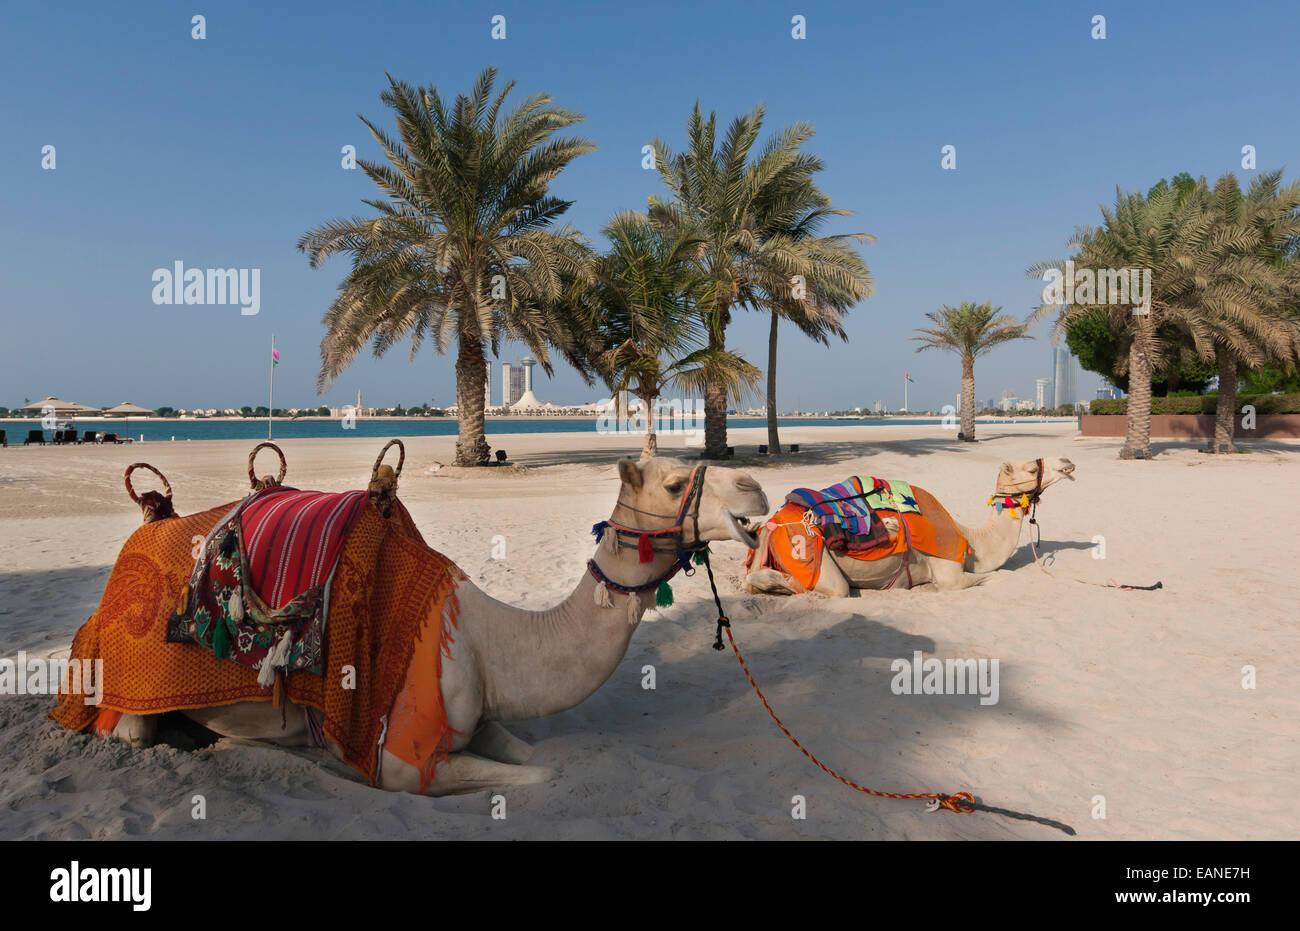 Abu Dhabi, Emiratos Árabes Unidos. Los camellos en la playa. Foto de stock